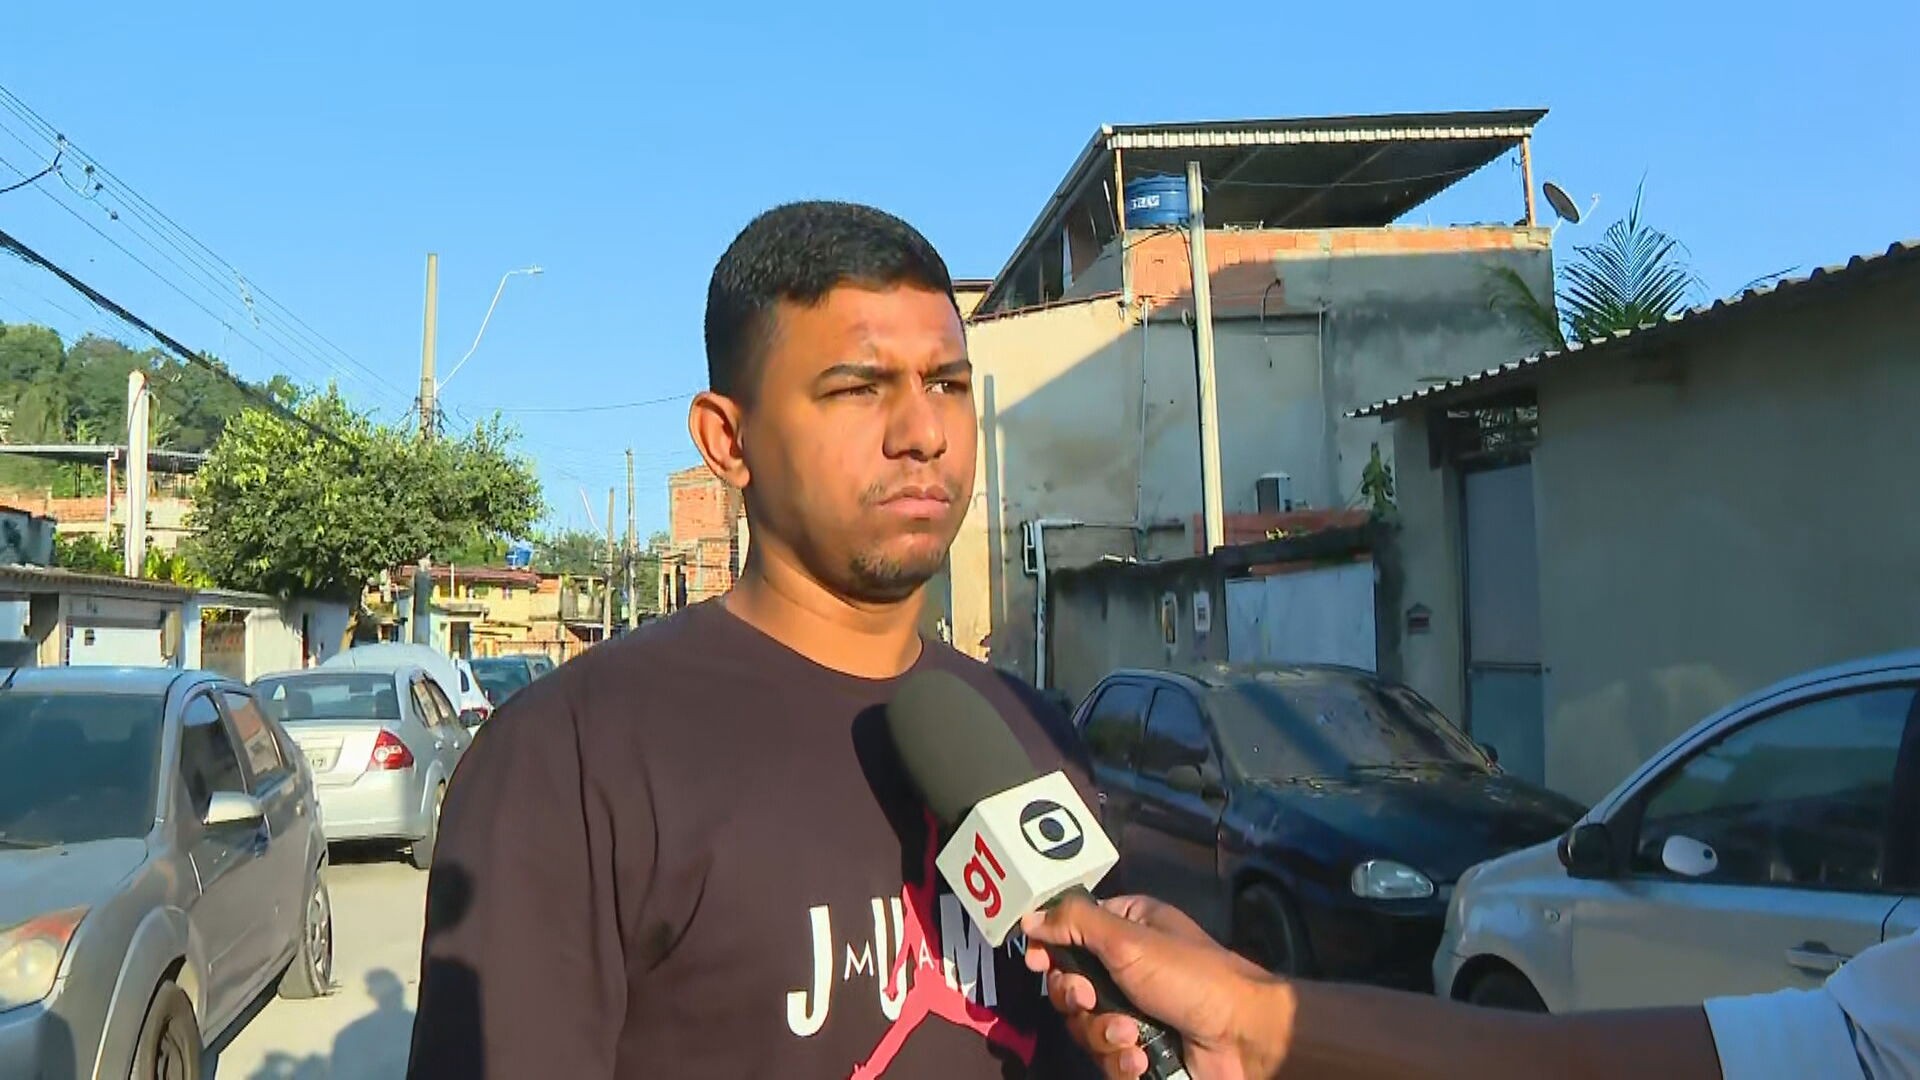 ‘Eu não queria machucar ninguém’, diz motorista que arrastou assaltante na Zona Oeste do Rio